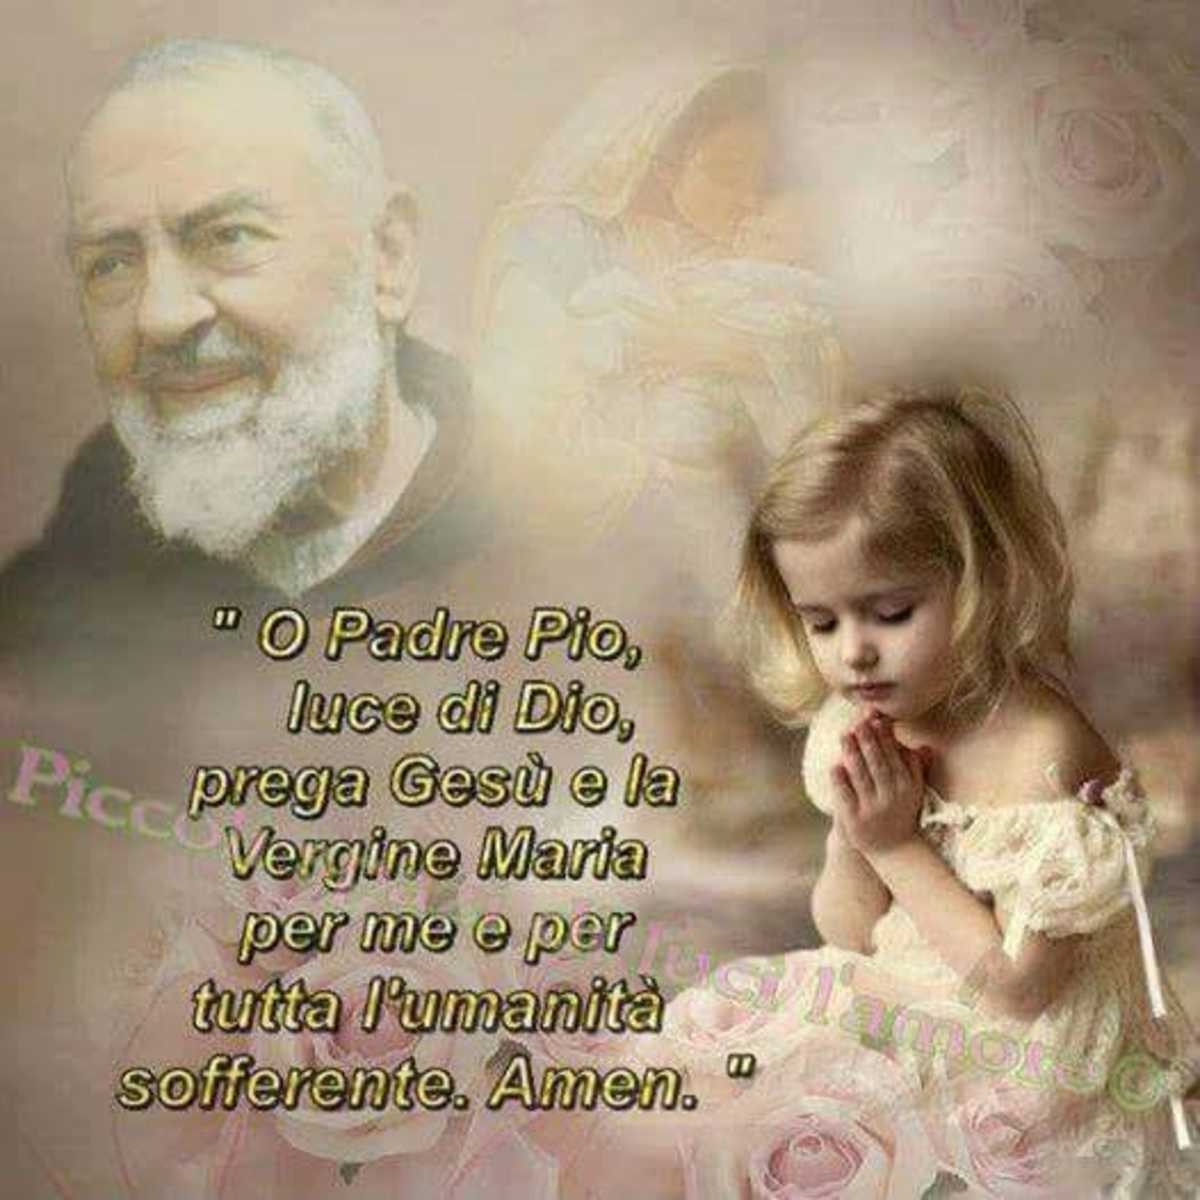 Immagini belle di Padre Pio 935